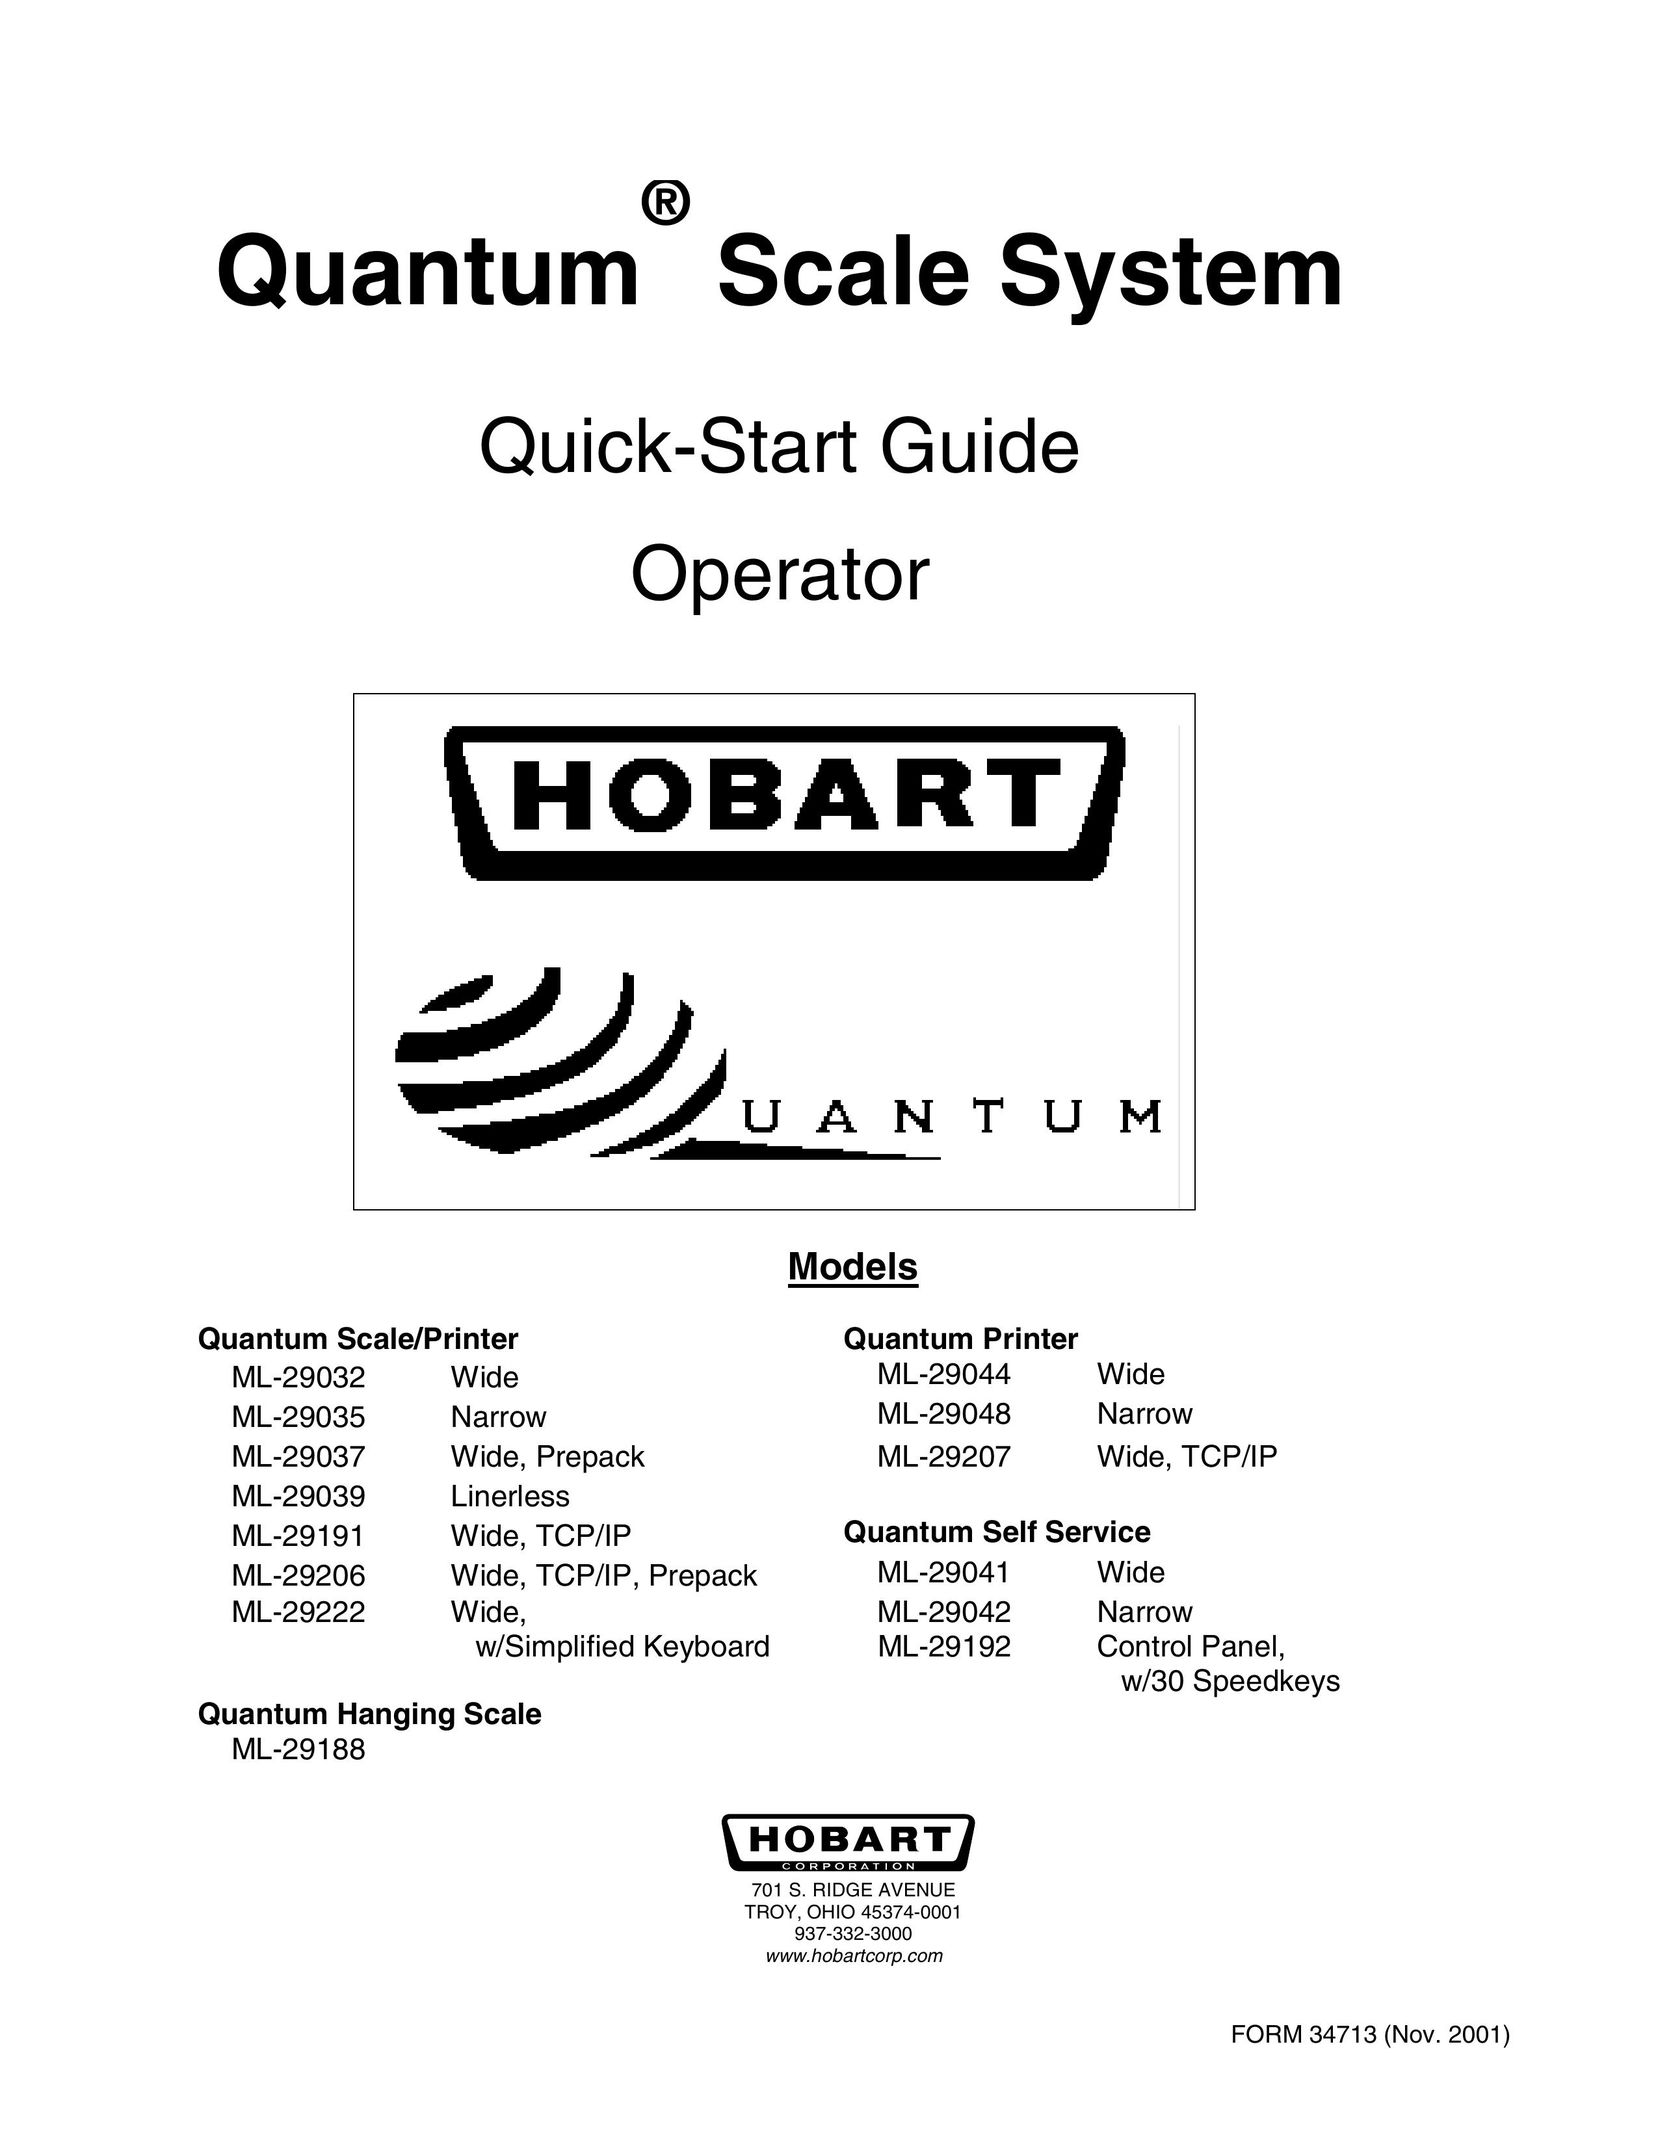 Hobart ML-29207 Printer User Manual